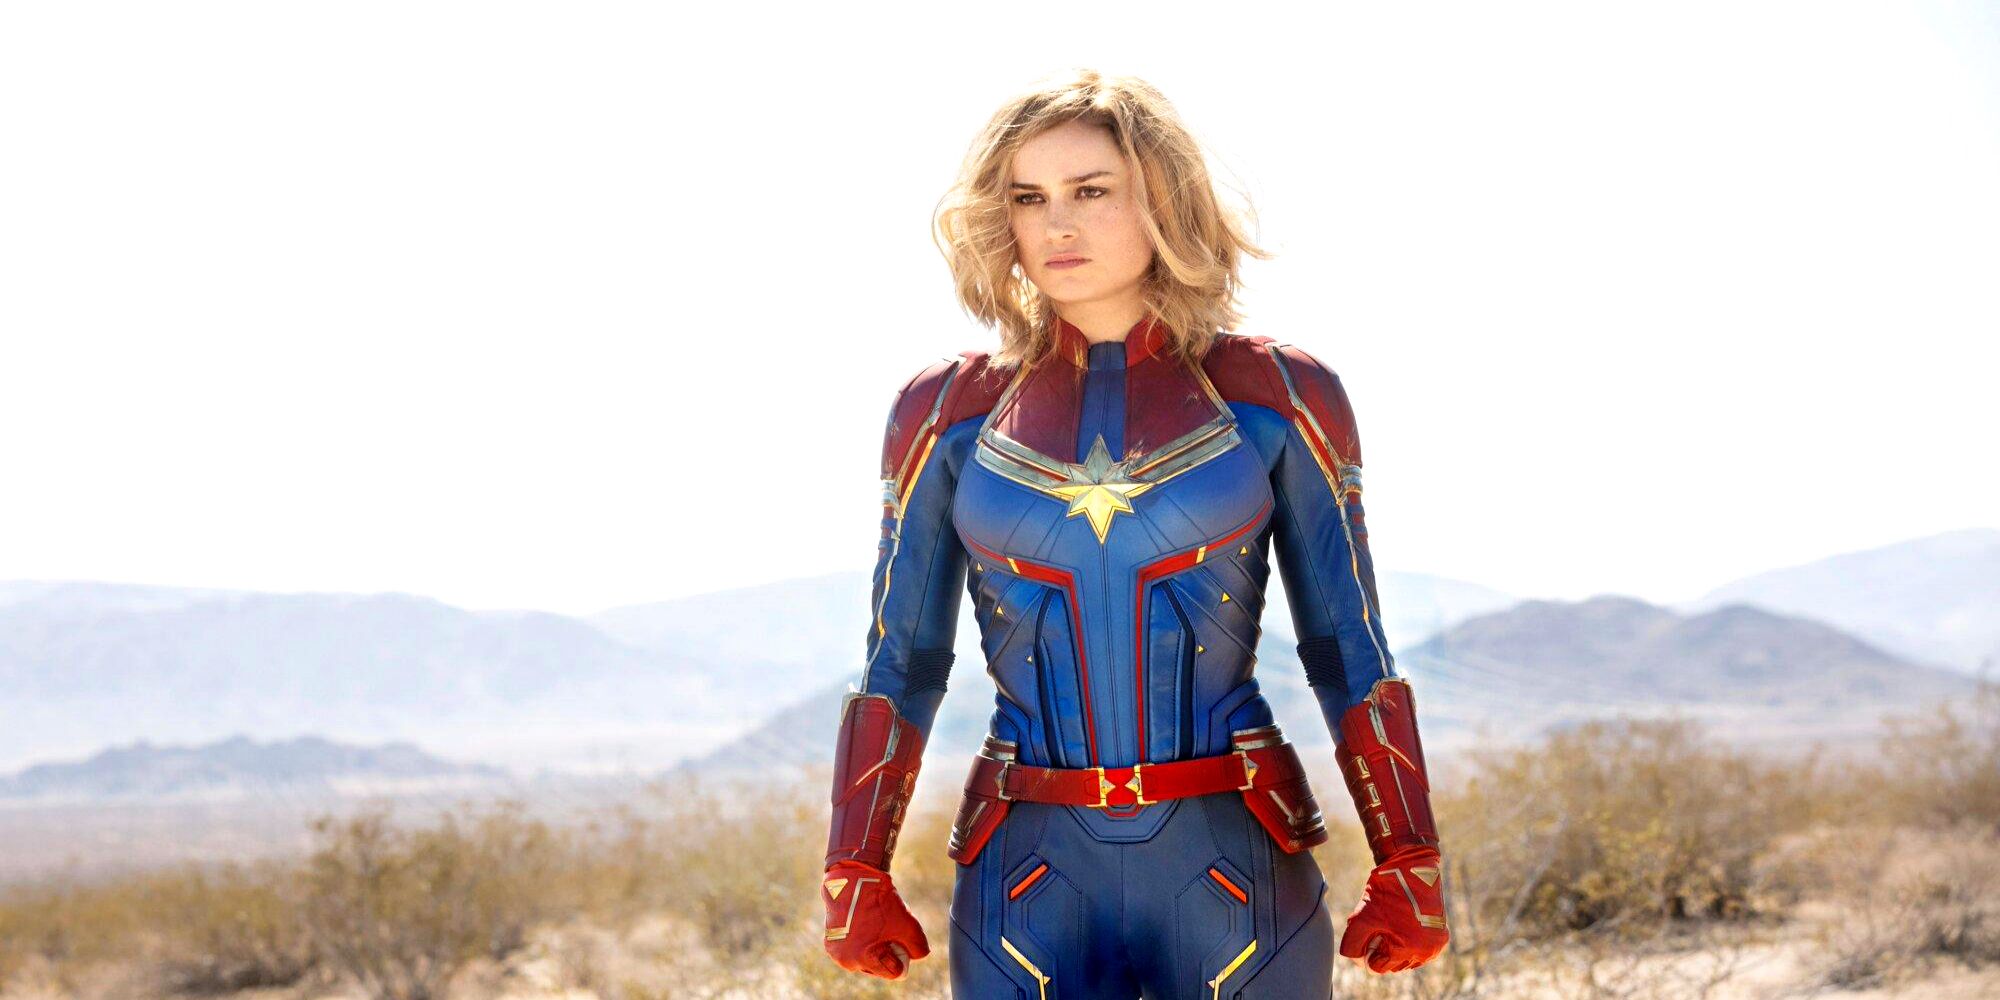 Carol Danvers in her Captain Marvel suit in the desert